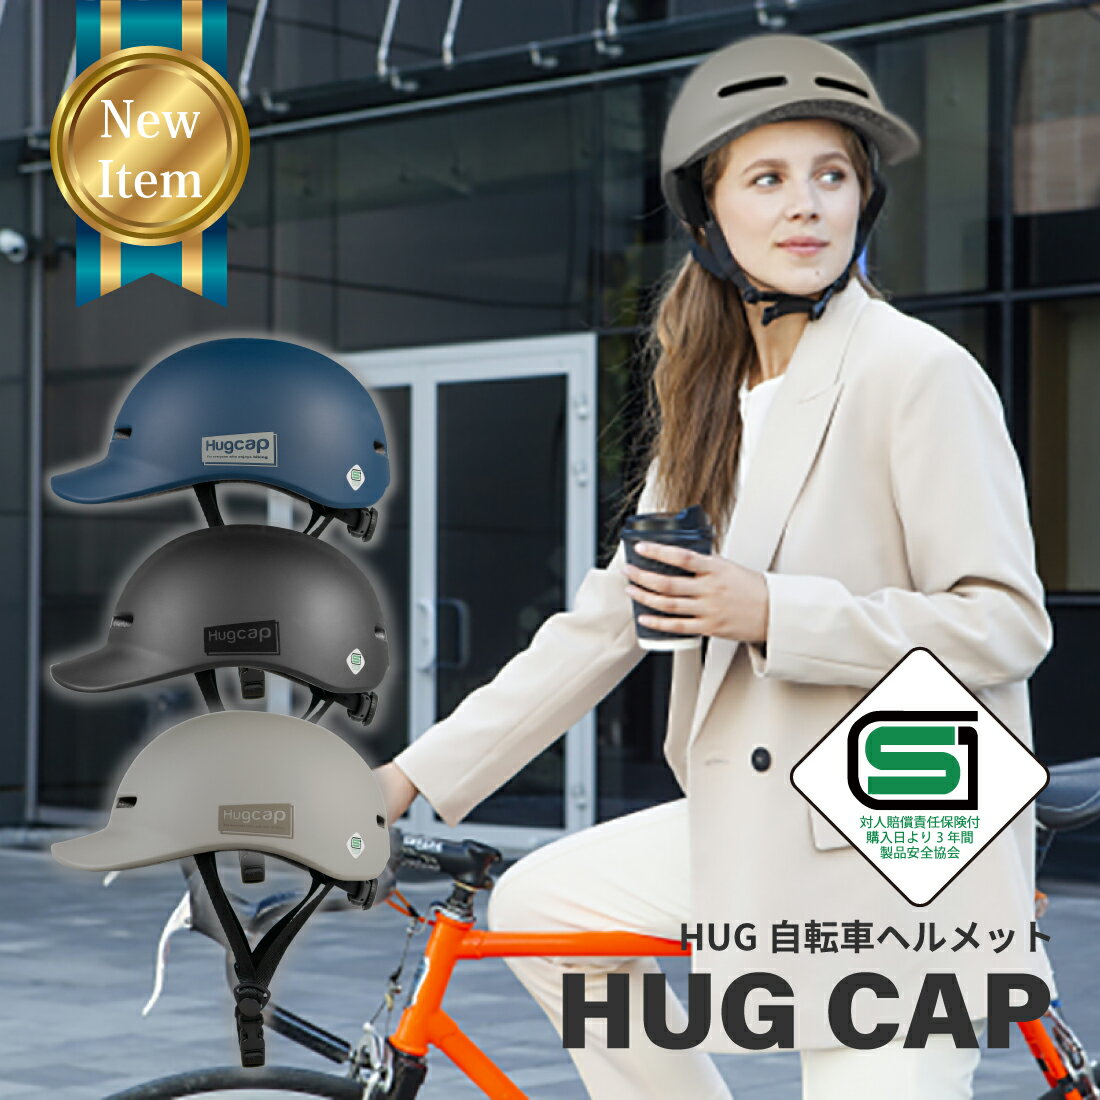 自転車ヘルメット 帽子型 メンス 方便性 安全性 CE認証 自転車 ヘルメット 軽量 帽子 プロテクター キャップ 帽子 大人 女性 サイクリング 帽子型ヘルメット2024最新 自転車用ヘルメット ハット型 安全ヘルメット